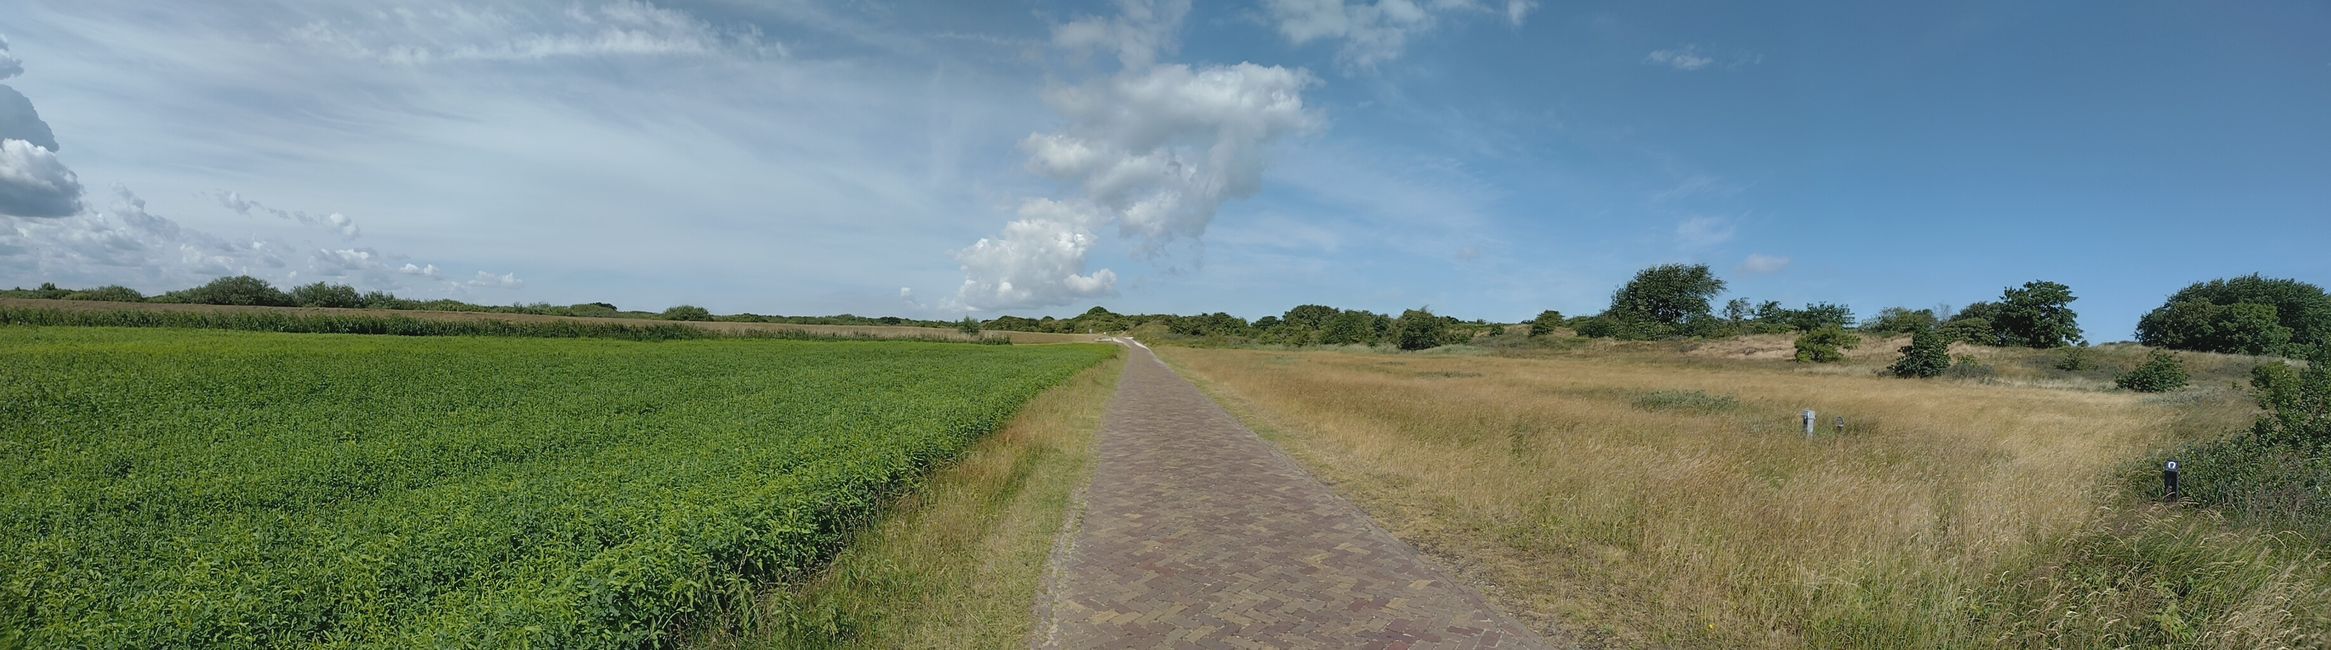 23. diena: Schiermonnikoog (19 km)